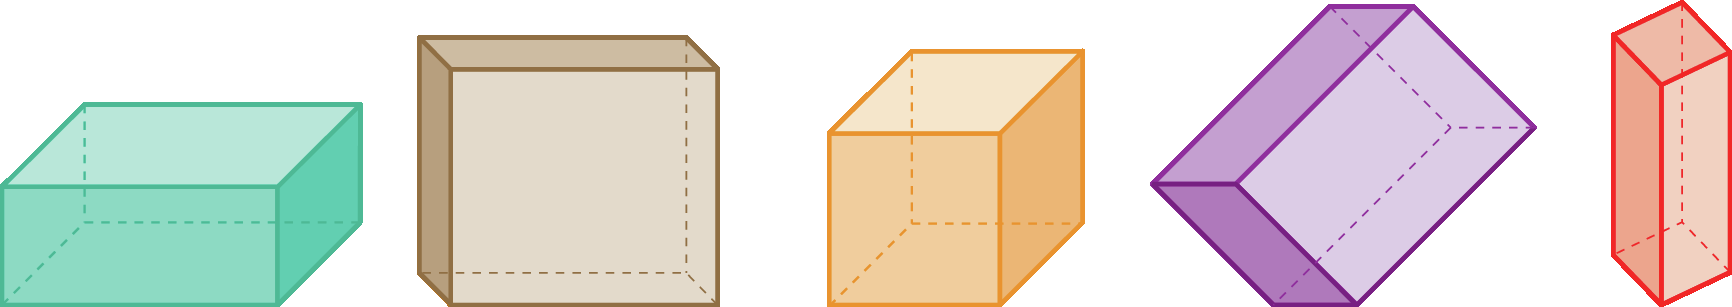 Ilustração. Bloco retangular na horizontal, bloco retangular na vertical, cubo, bloco retangular inclinado e bloco retangular vertical.